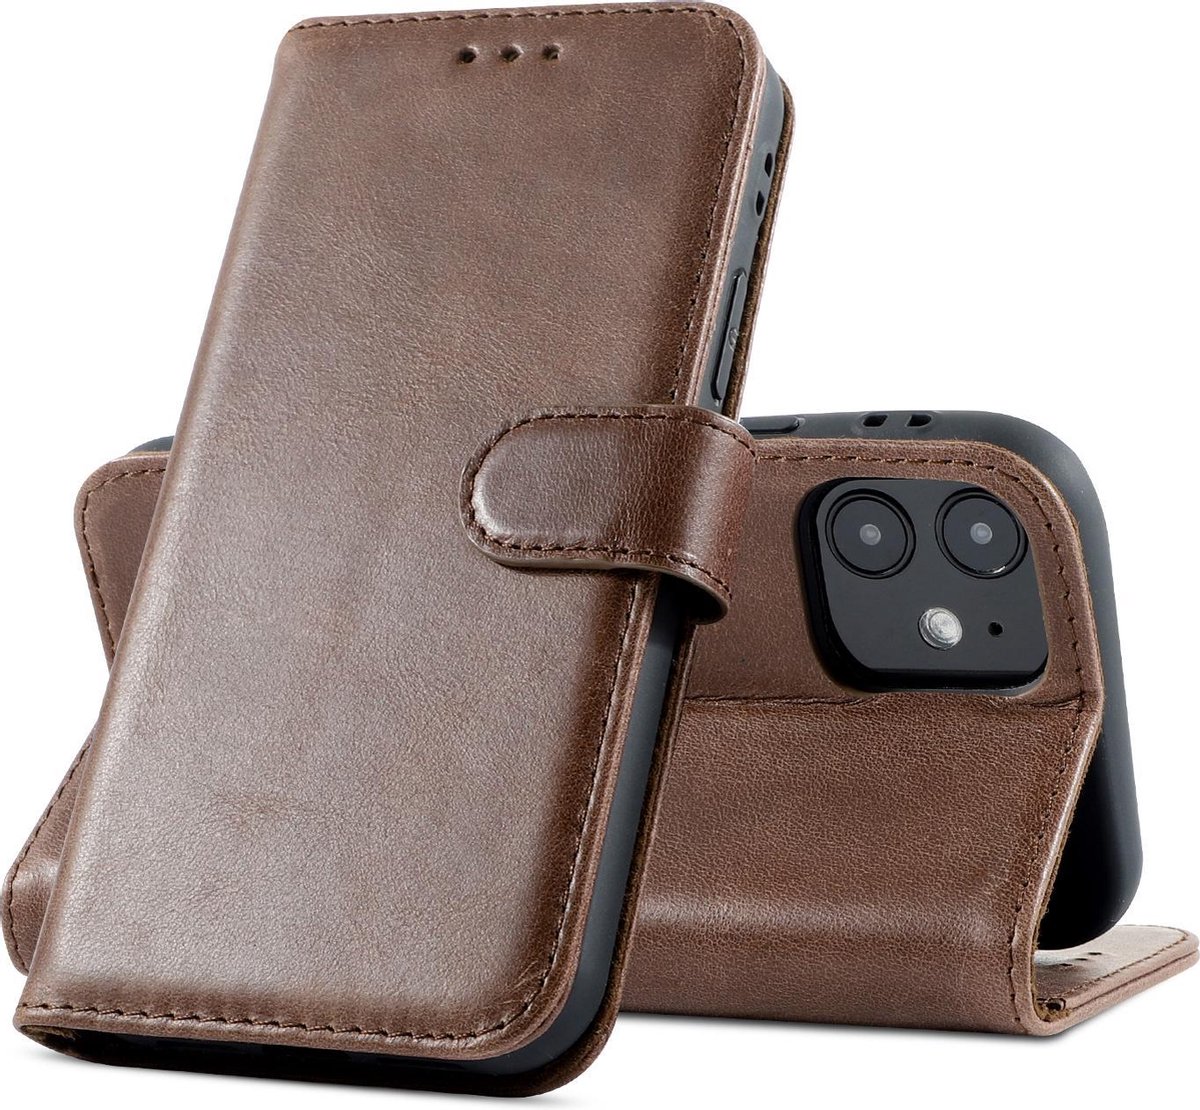 Klassiek Design - Echt Lederen Hoesje - Book Case Telefoonhoesje - Echt Leren Portemonnee Wallet Case - iPhone 12 Mini - Mocca